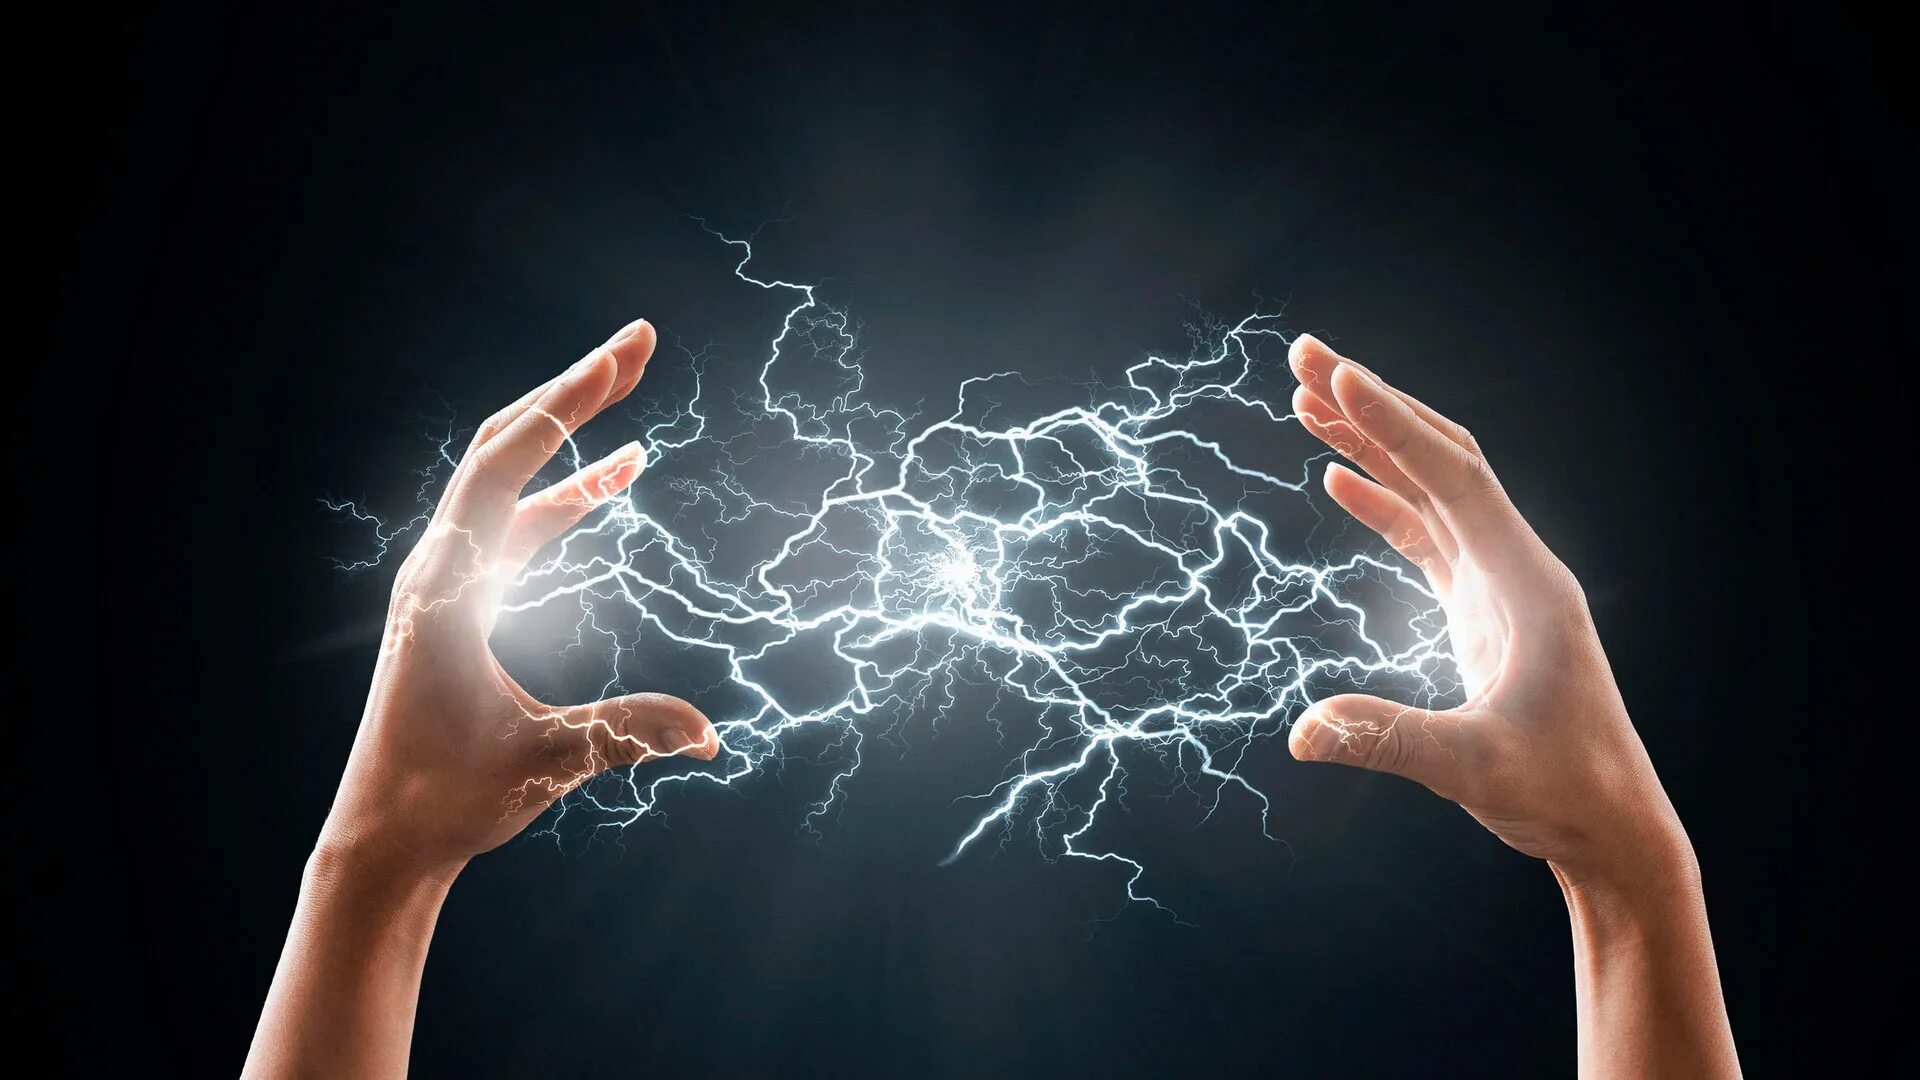 Молния на руке. Электричество. Электричество в руках. Электричество картинки.